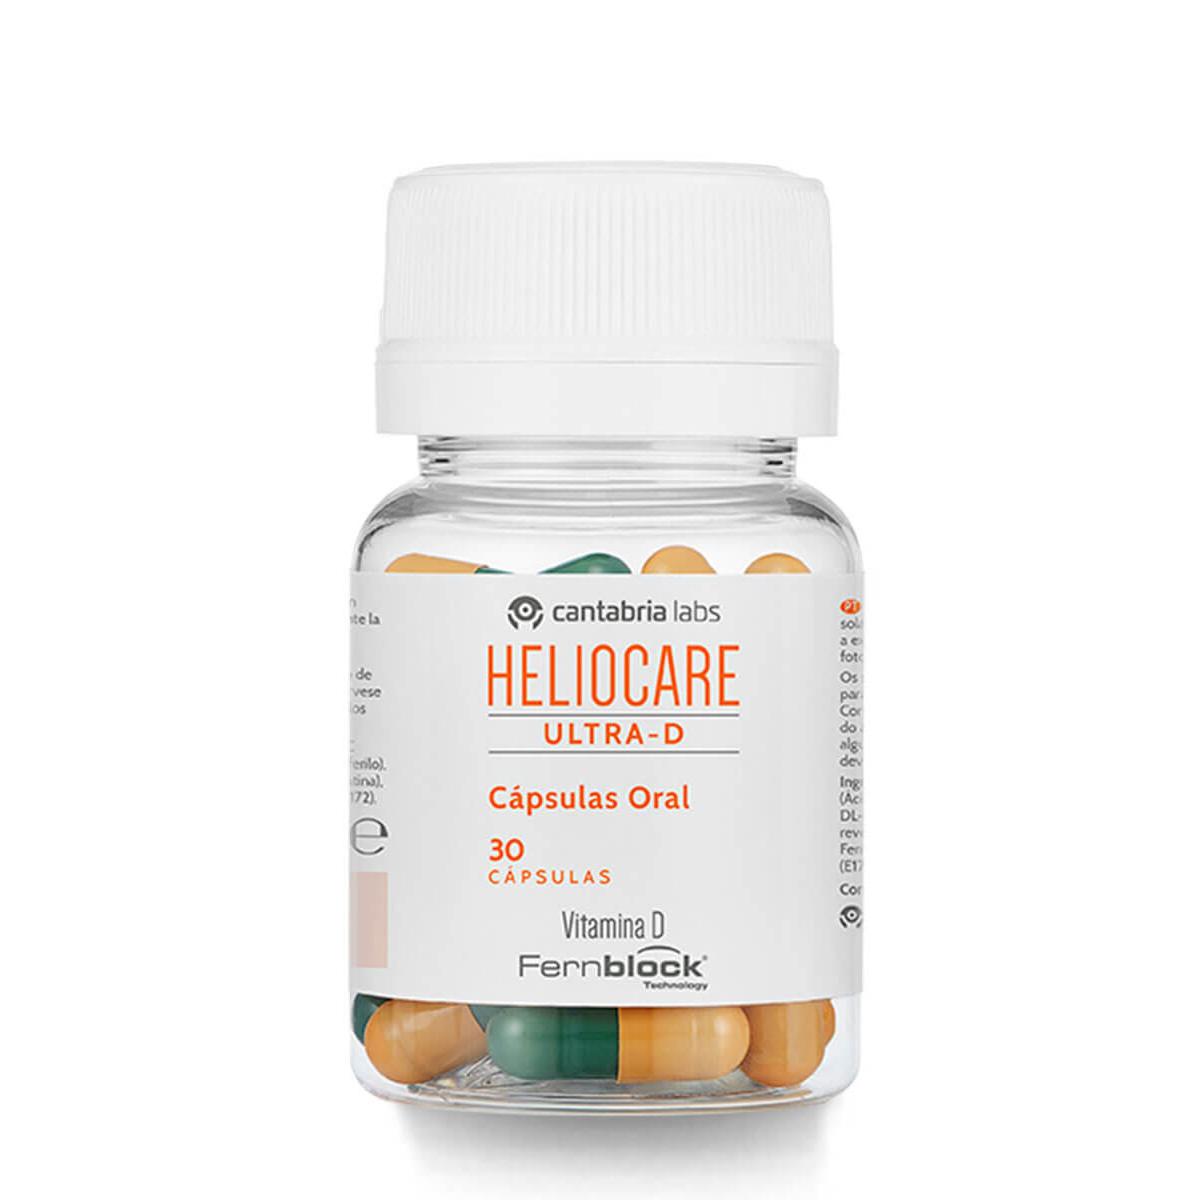 Heliocare - Heliocare ® ultra-d vitaminas solares 30 cápsulas